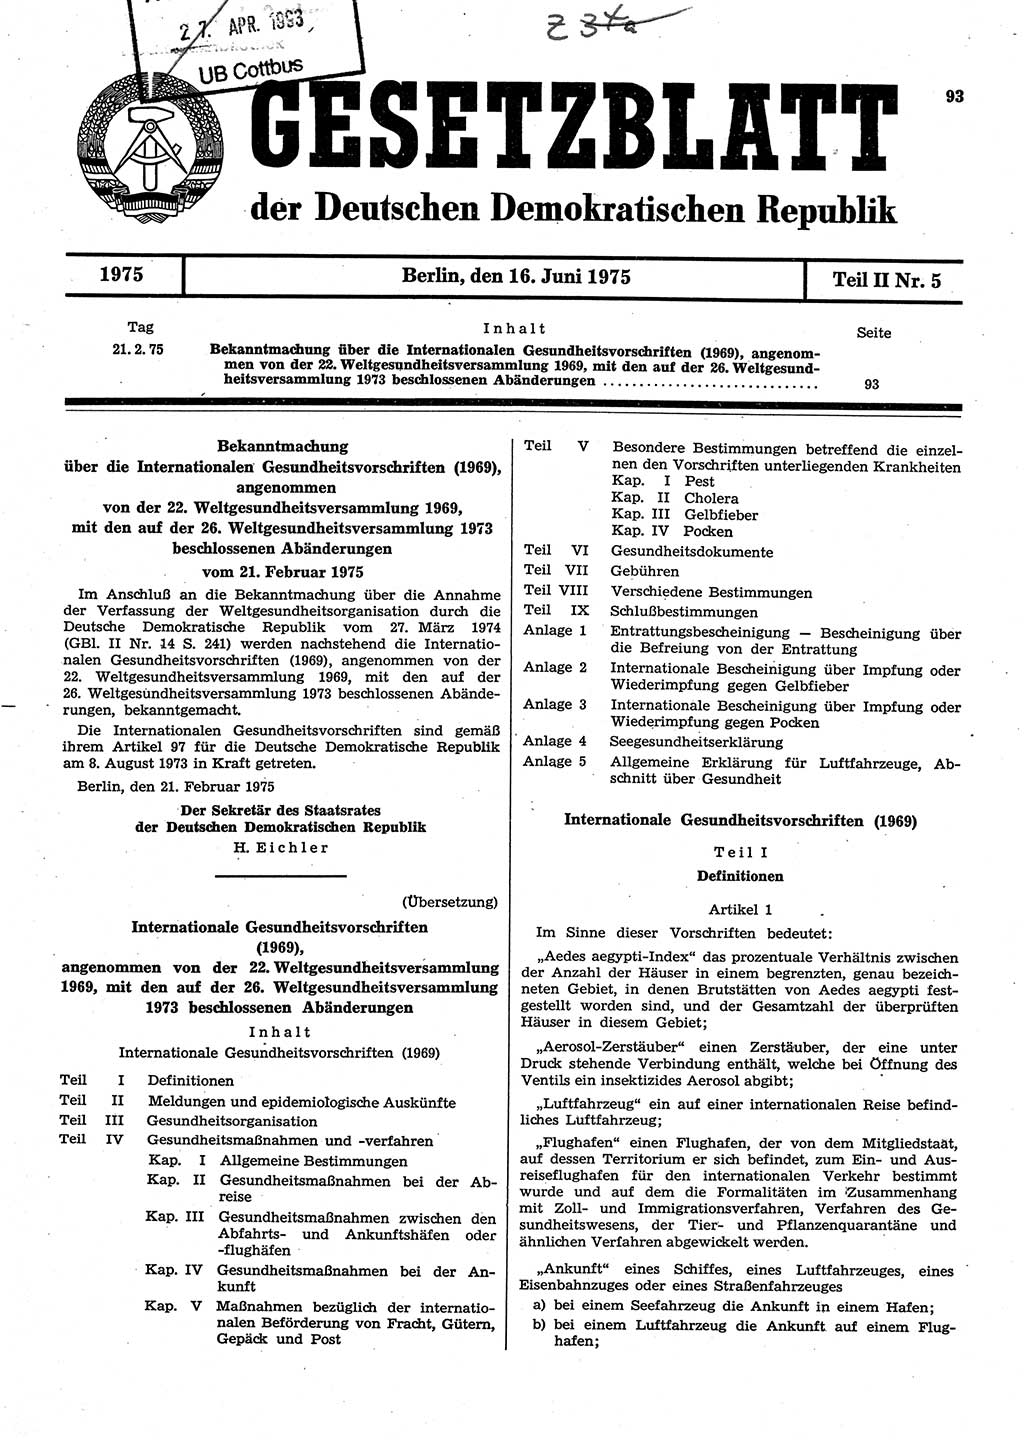 Gesetzblatt (GBl.) der Deutschen Demokratischen Republik (DDR) Teil ⅠⅠ 1975, Seite 93 (GBl. DDR ⅠⅠ 1975, S. 93)